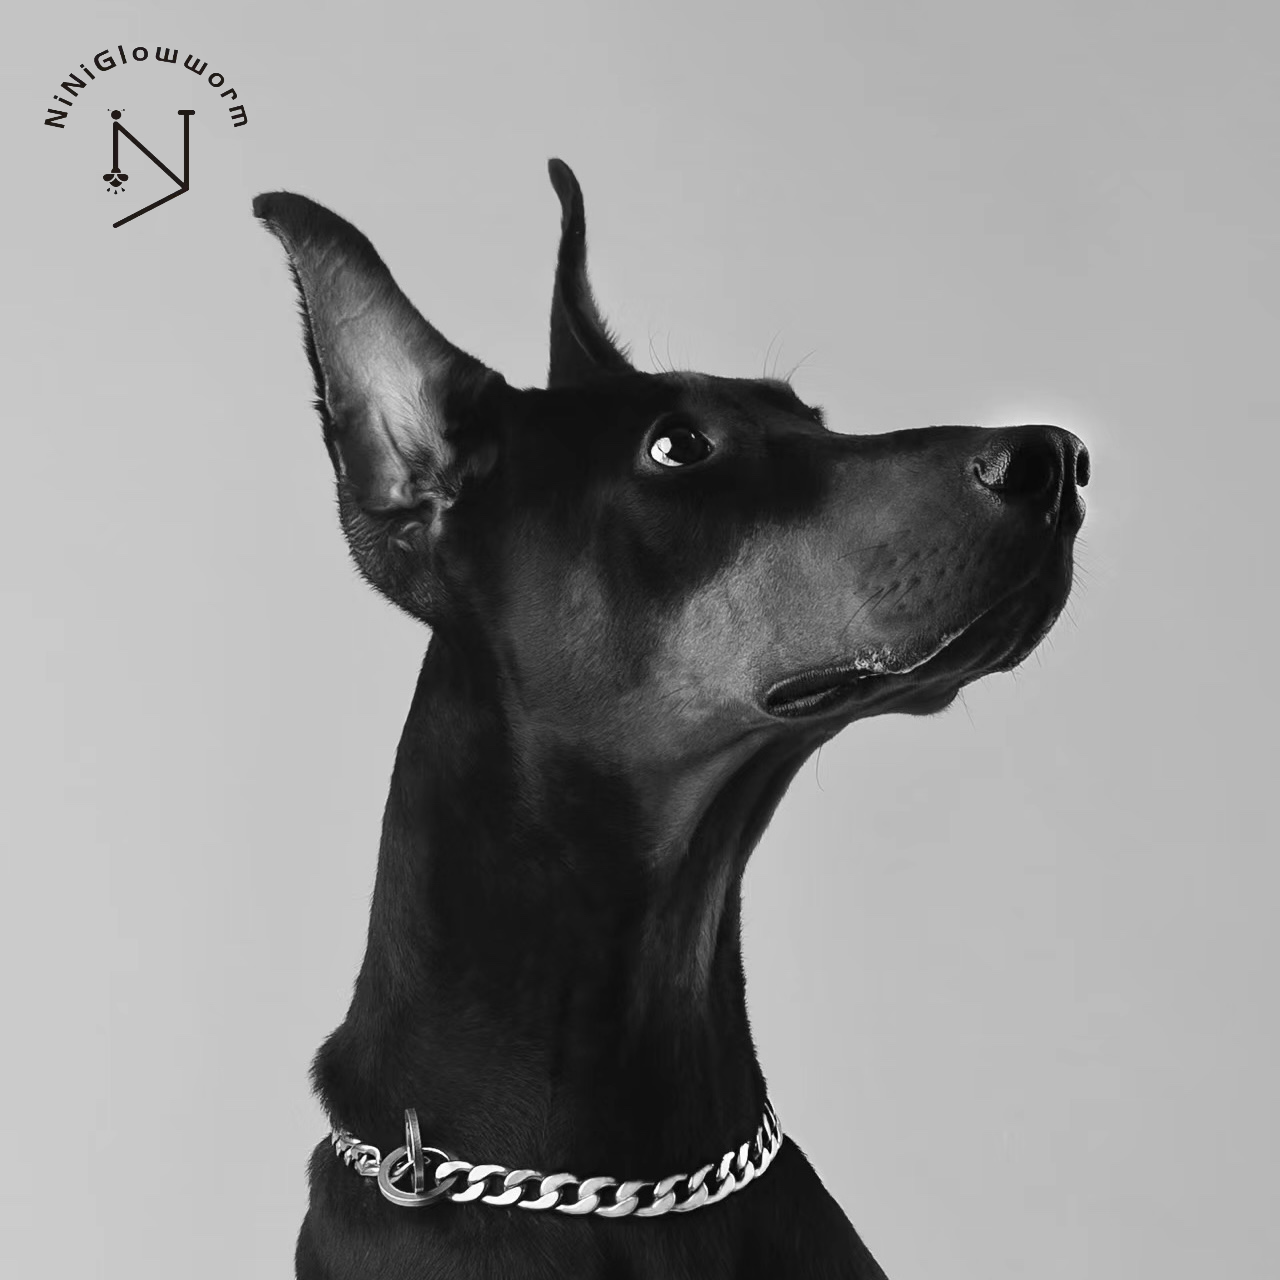 Dog Chain Silver Cuban Link Collar